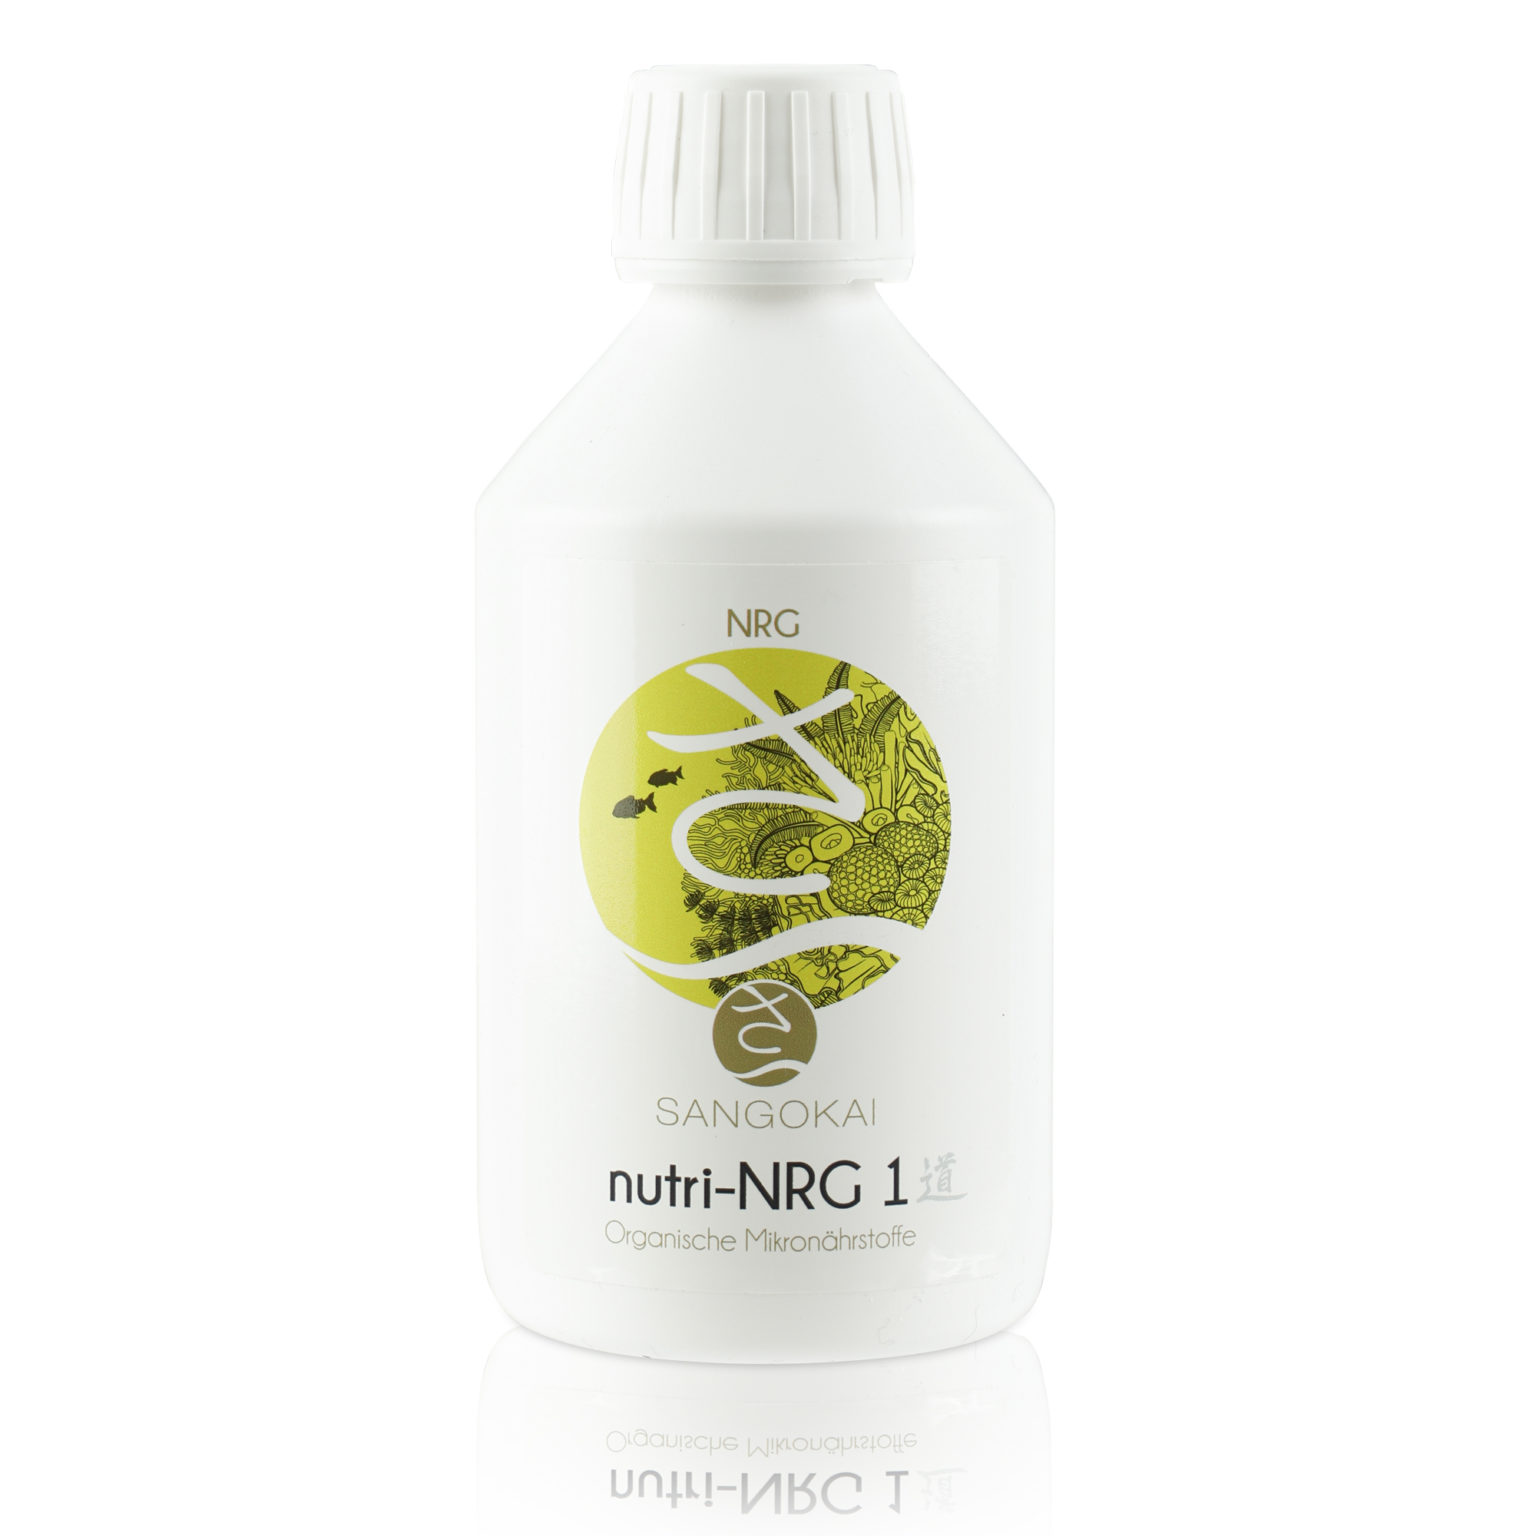 sango nutri-basic NANO # 2 250ml